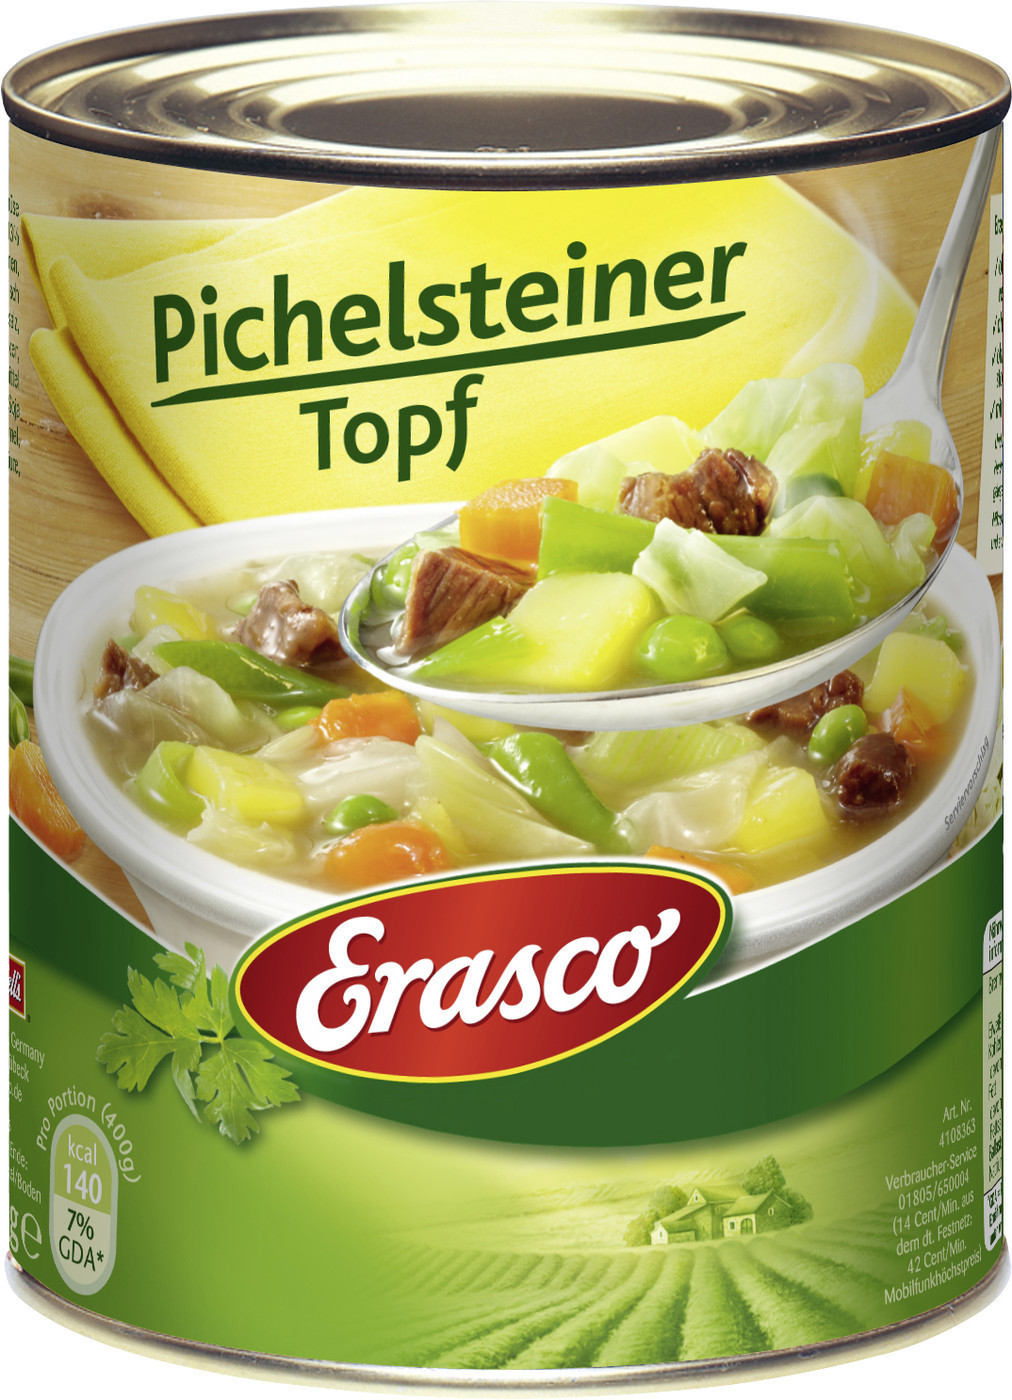 Erasco Pichelsteiner Topf ab 2,71 € | Preisvergleich bei idealo.de